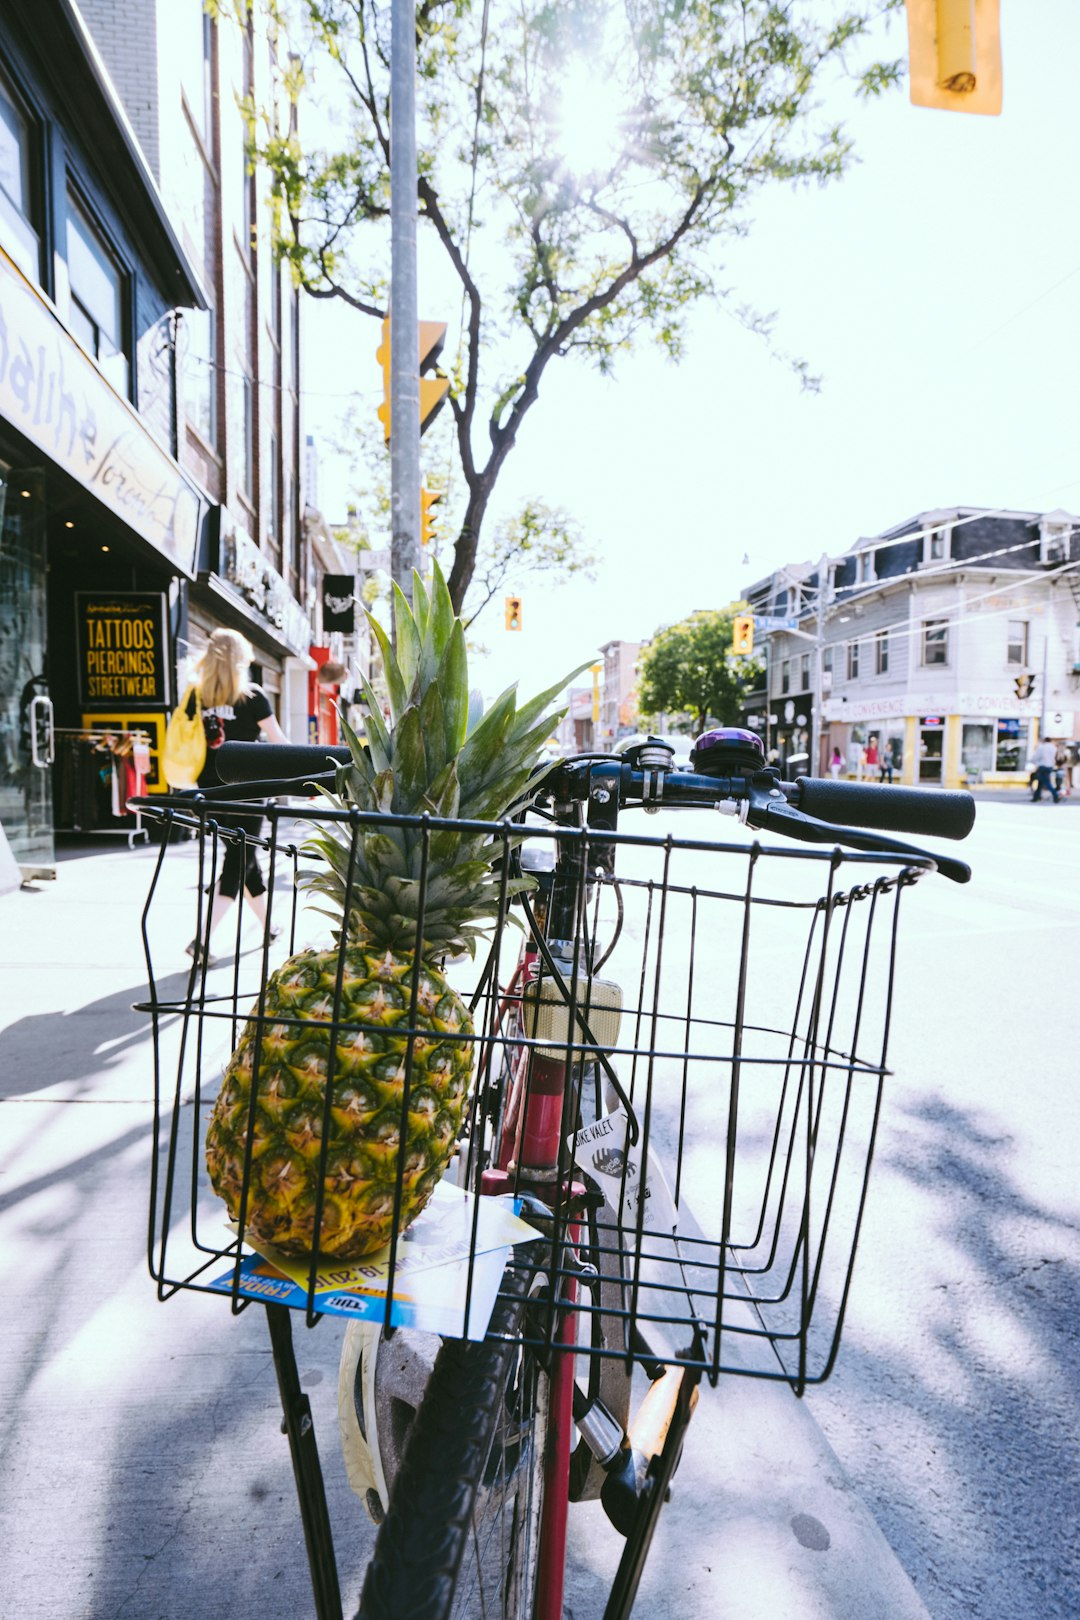 free pineapple image shot in toronto